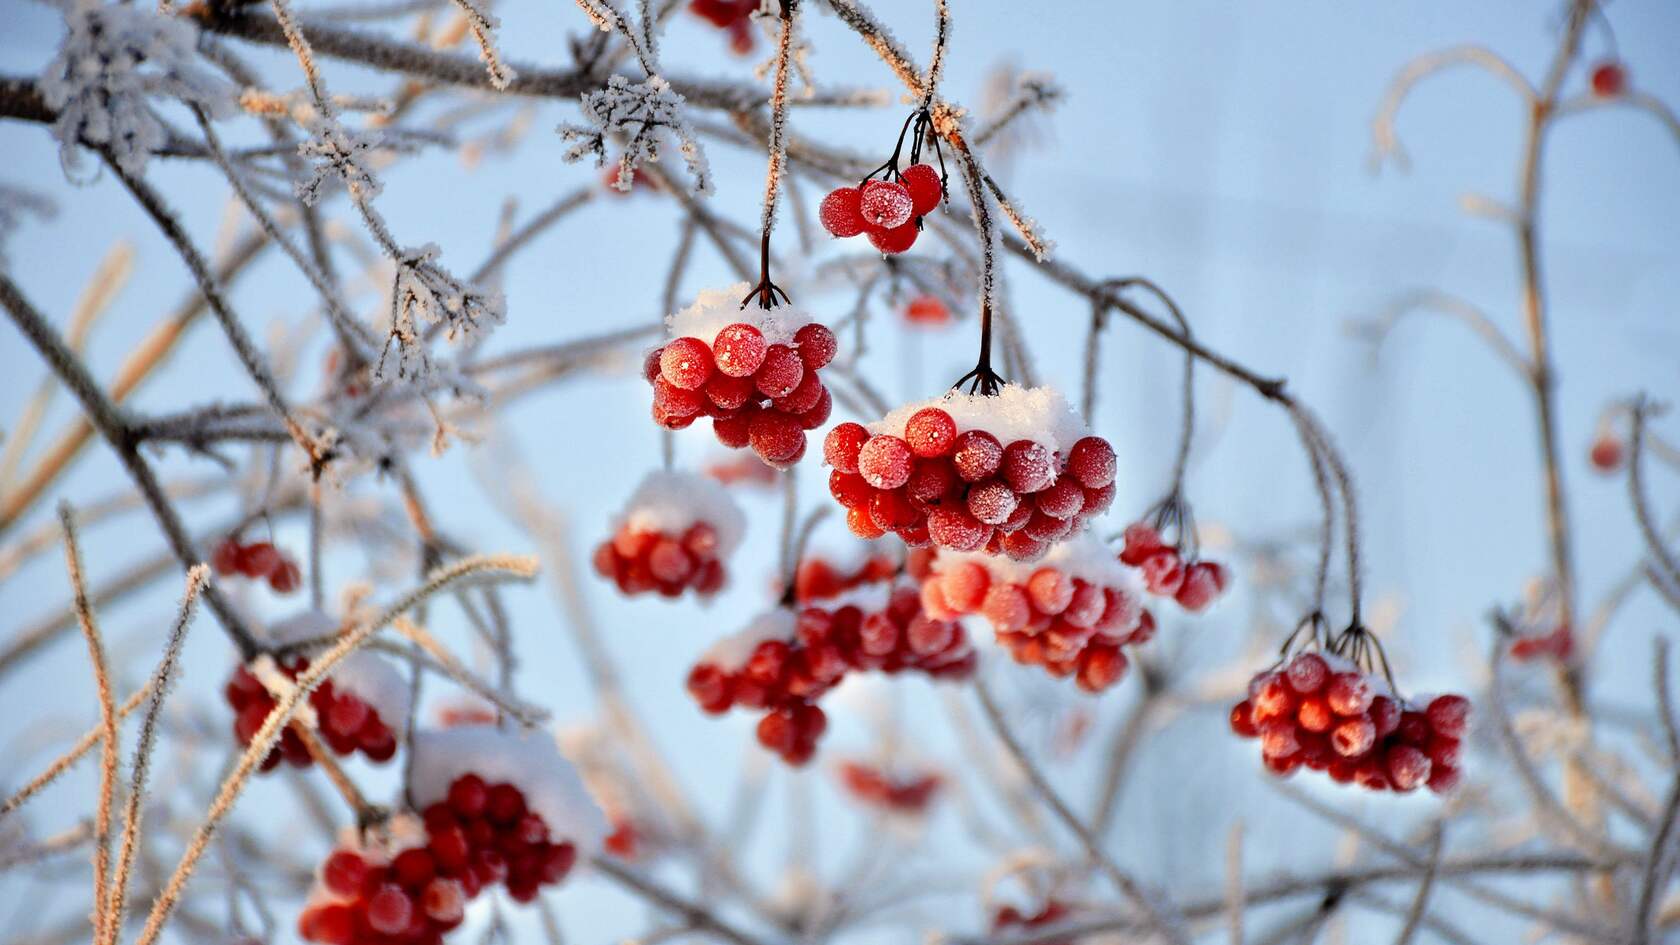 寒冷的冬 挂满雪 冰霜的红色浆果 琼花 琼花果实唯美景色壁纸图片